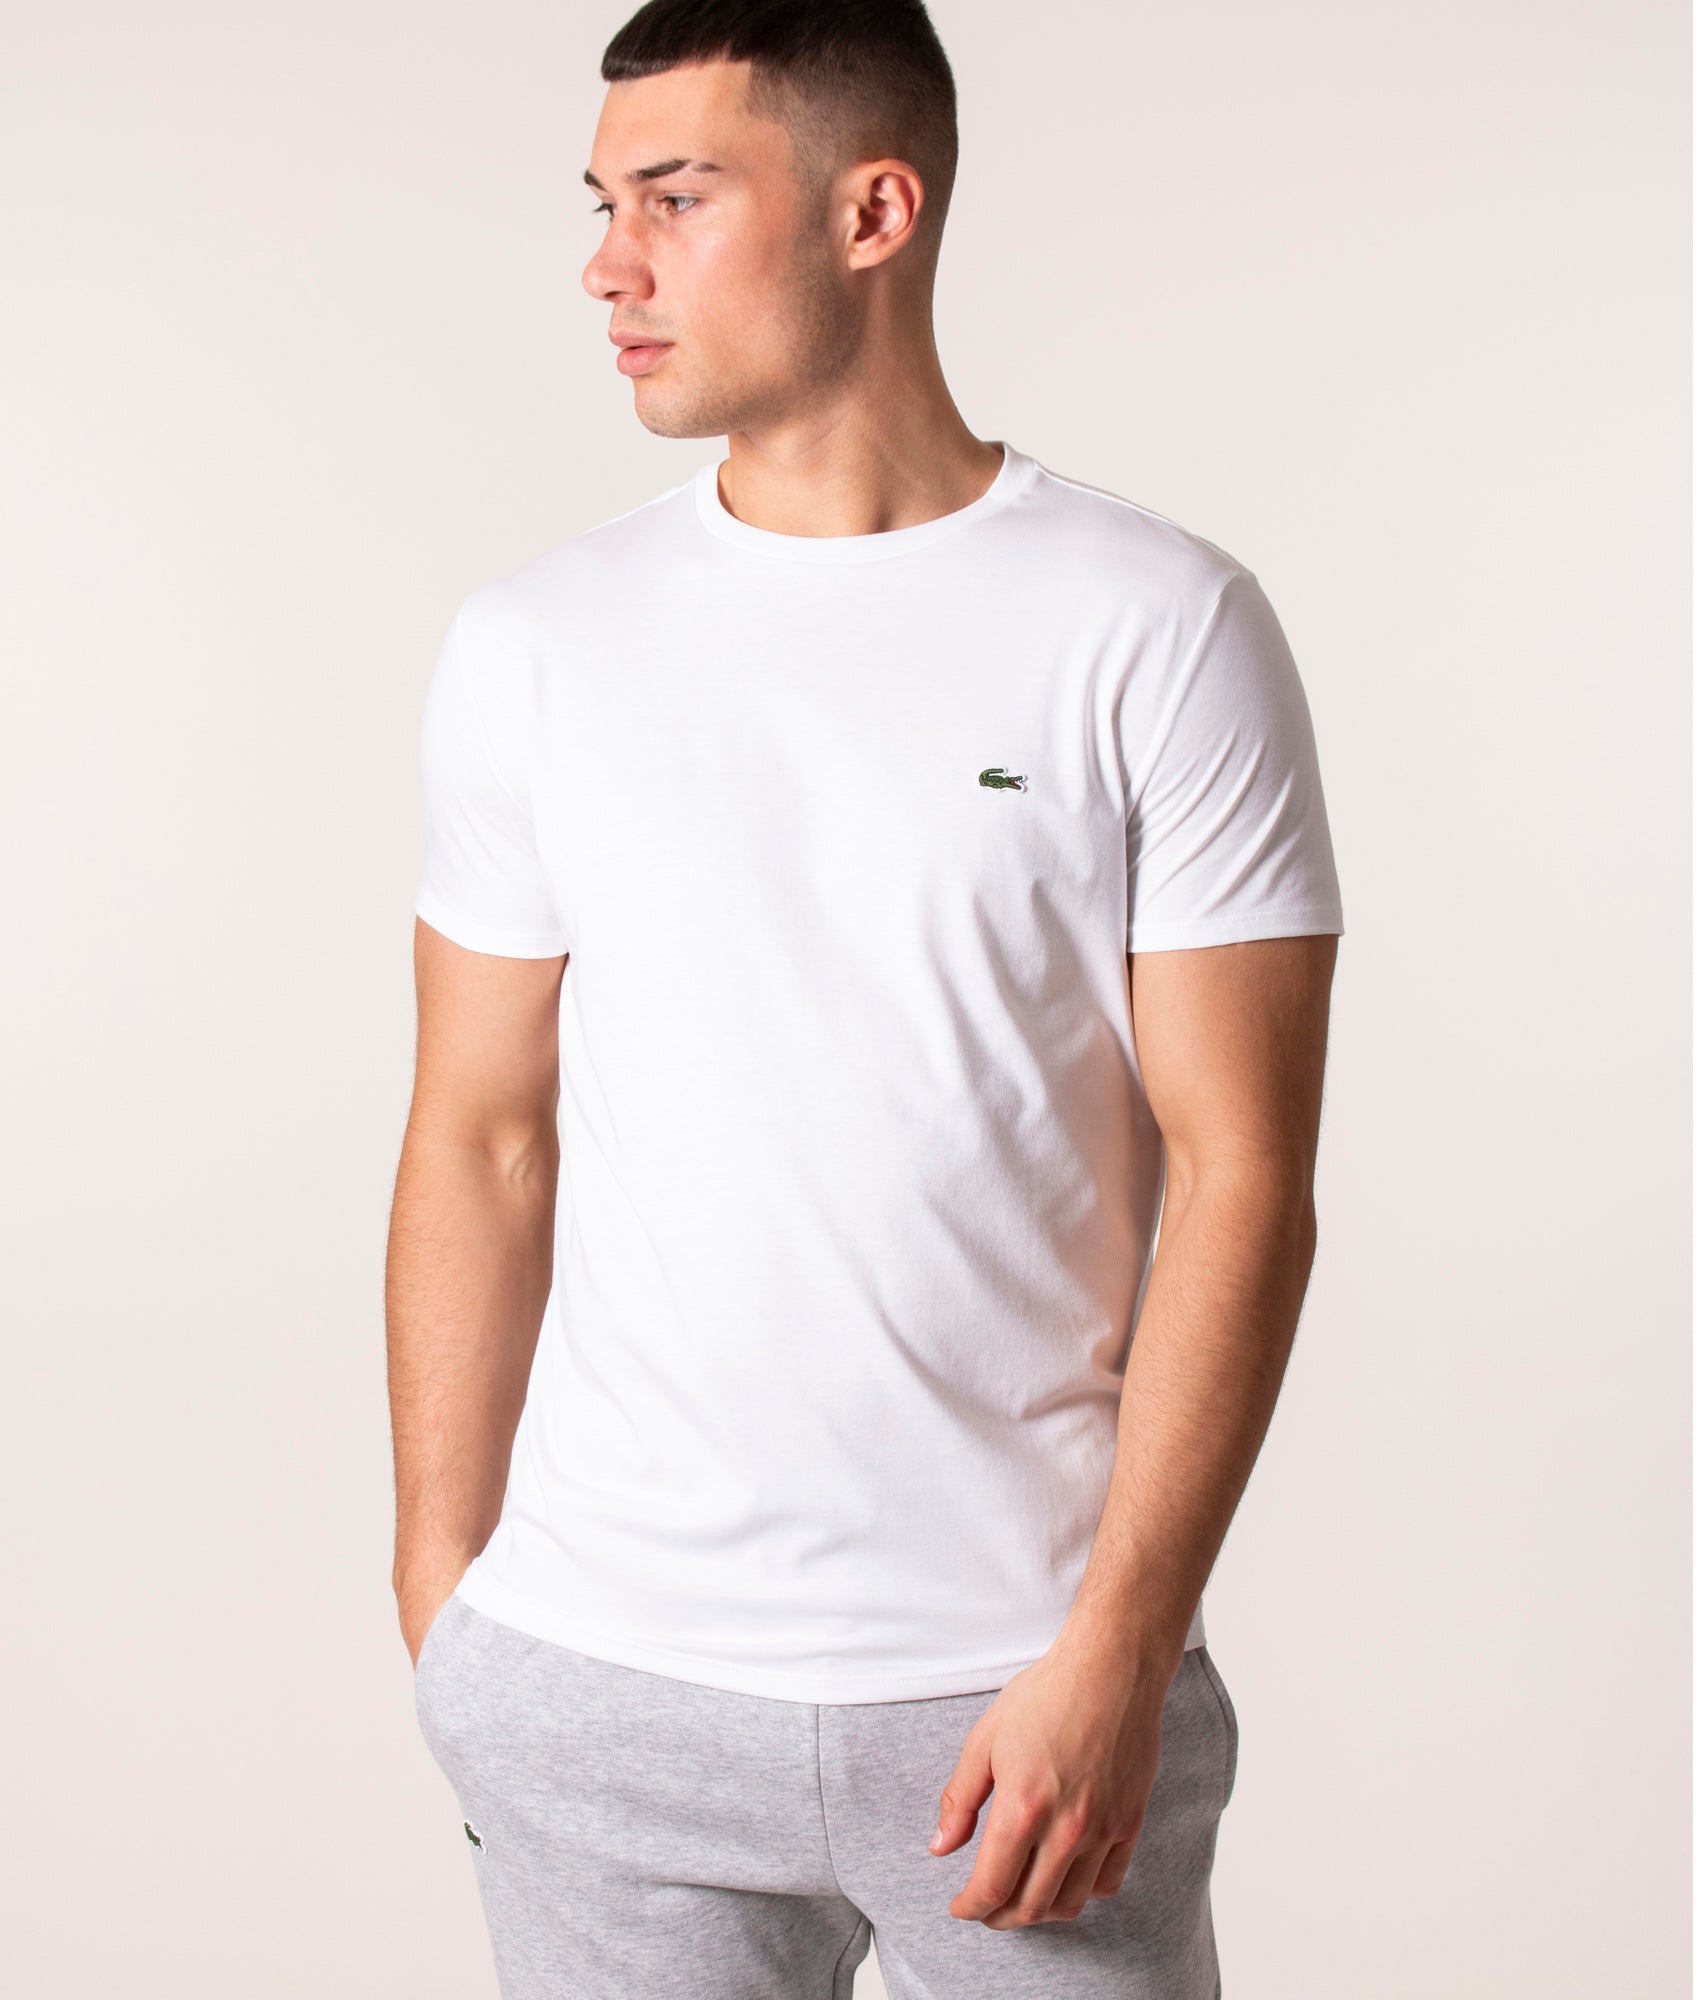 Lacoste Mens Pima Cotton Croc Logo T-Shirt - Colour: 001 White - Size: 4/M